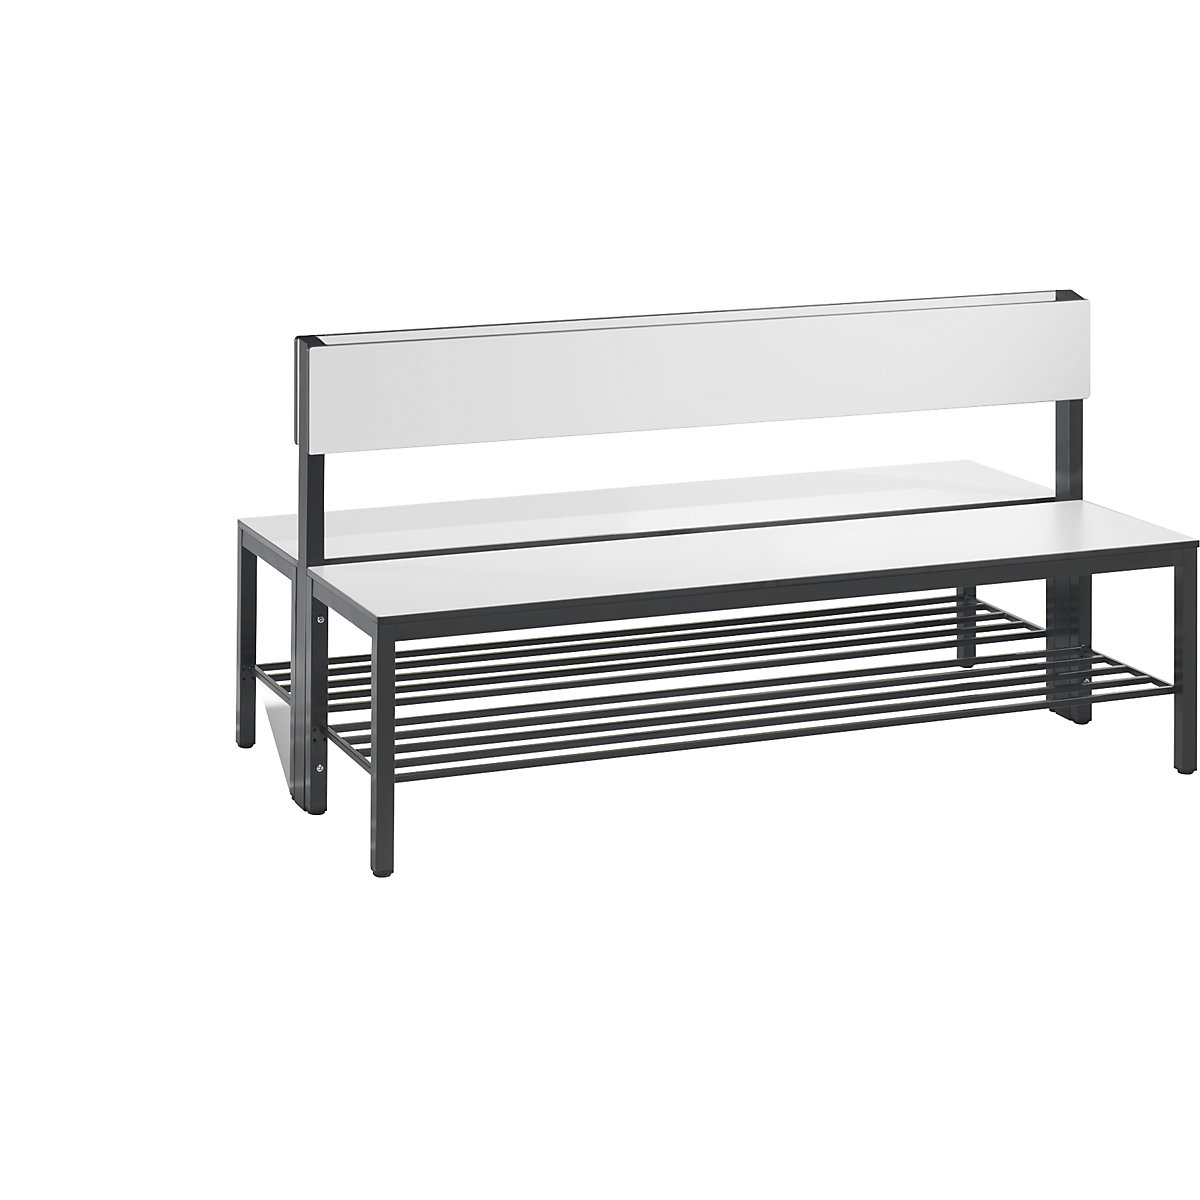 Šatnová lavice BASIC PLUS, oboustranná – C+P, plocha sedáku z HPL, poloviční výška, rošt na obuv, délka 1500 mm, bílá-6